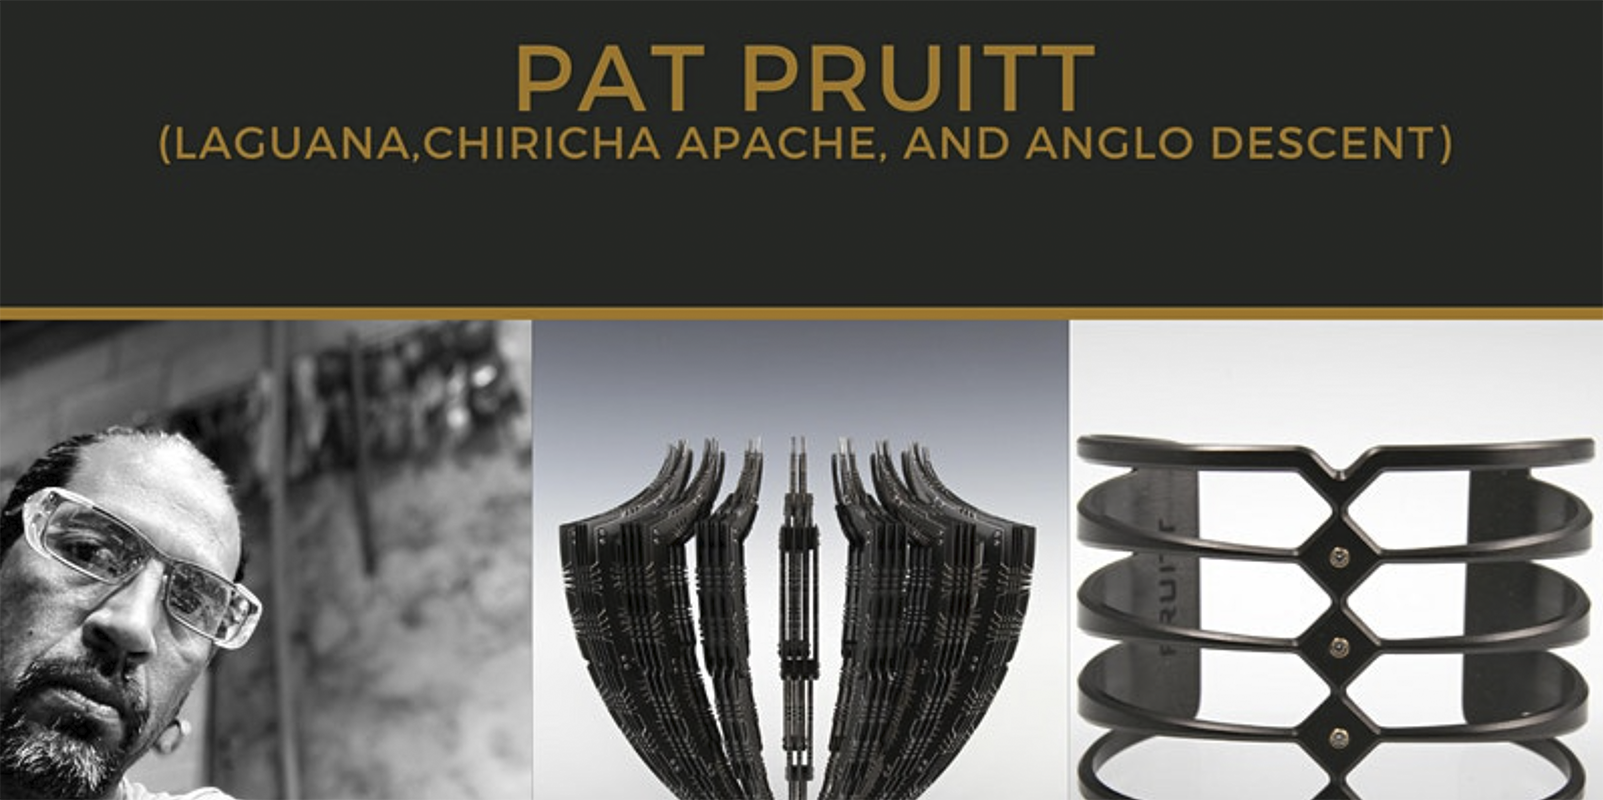 Pat Pruitt